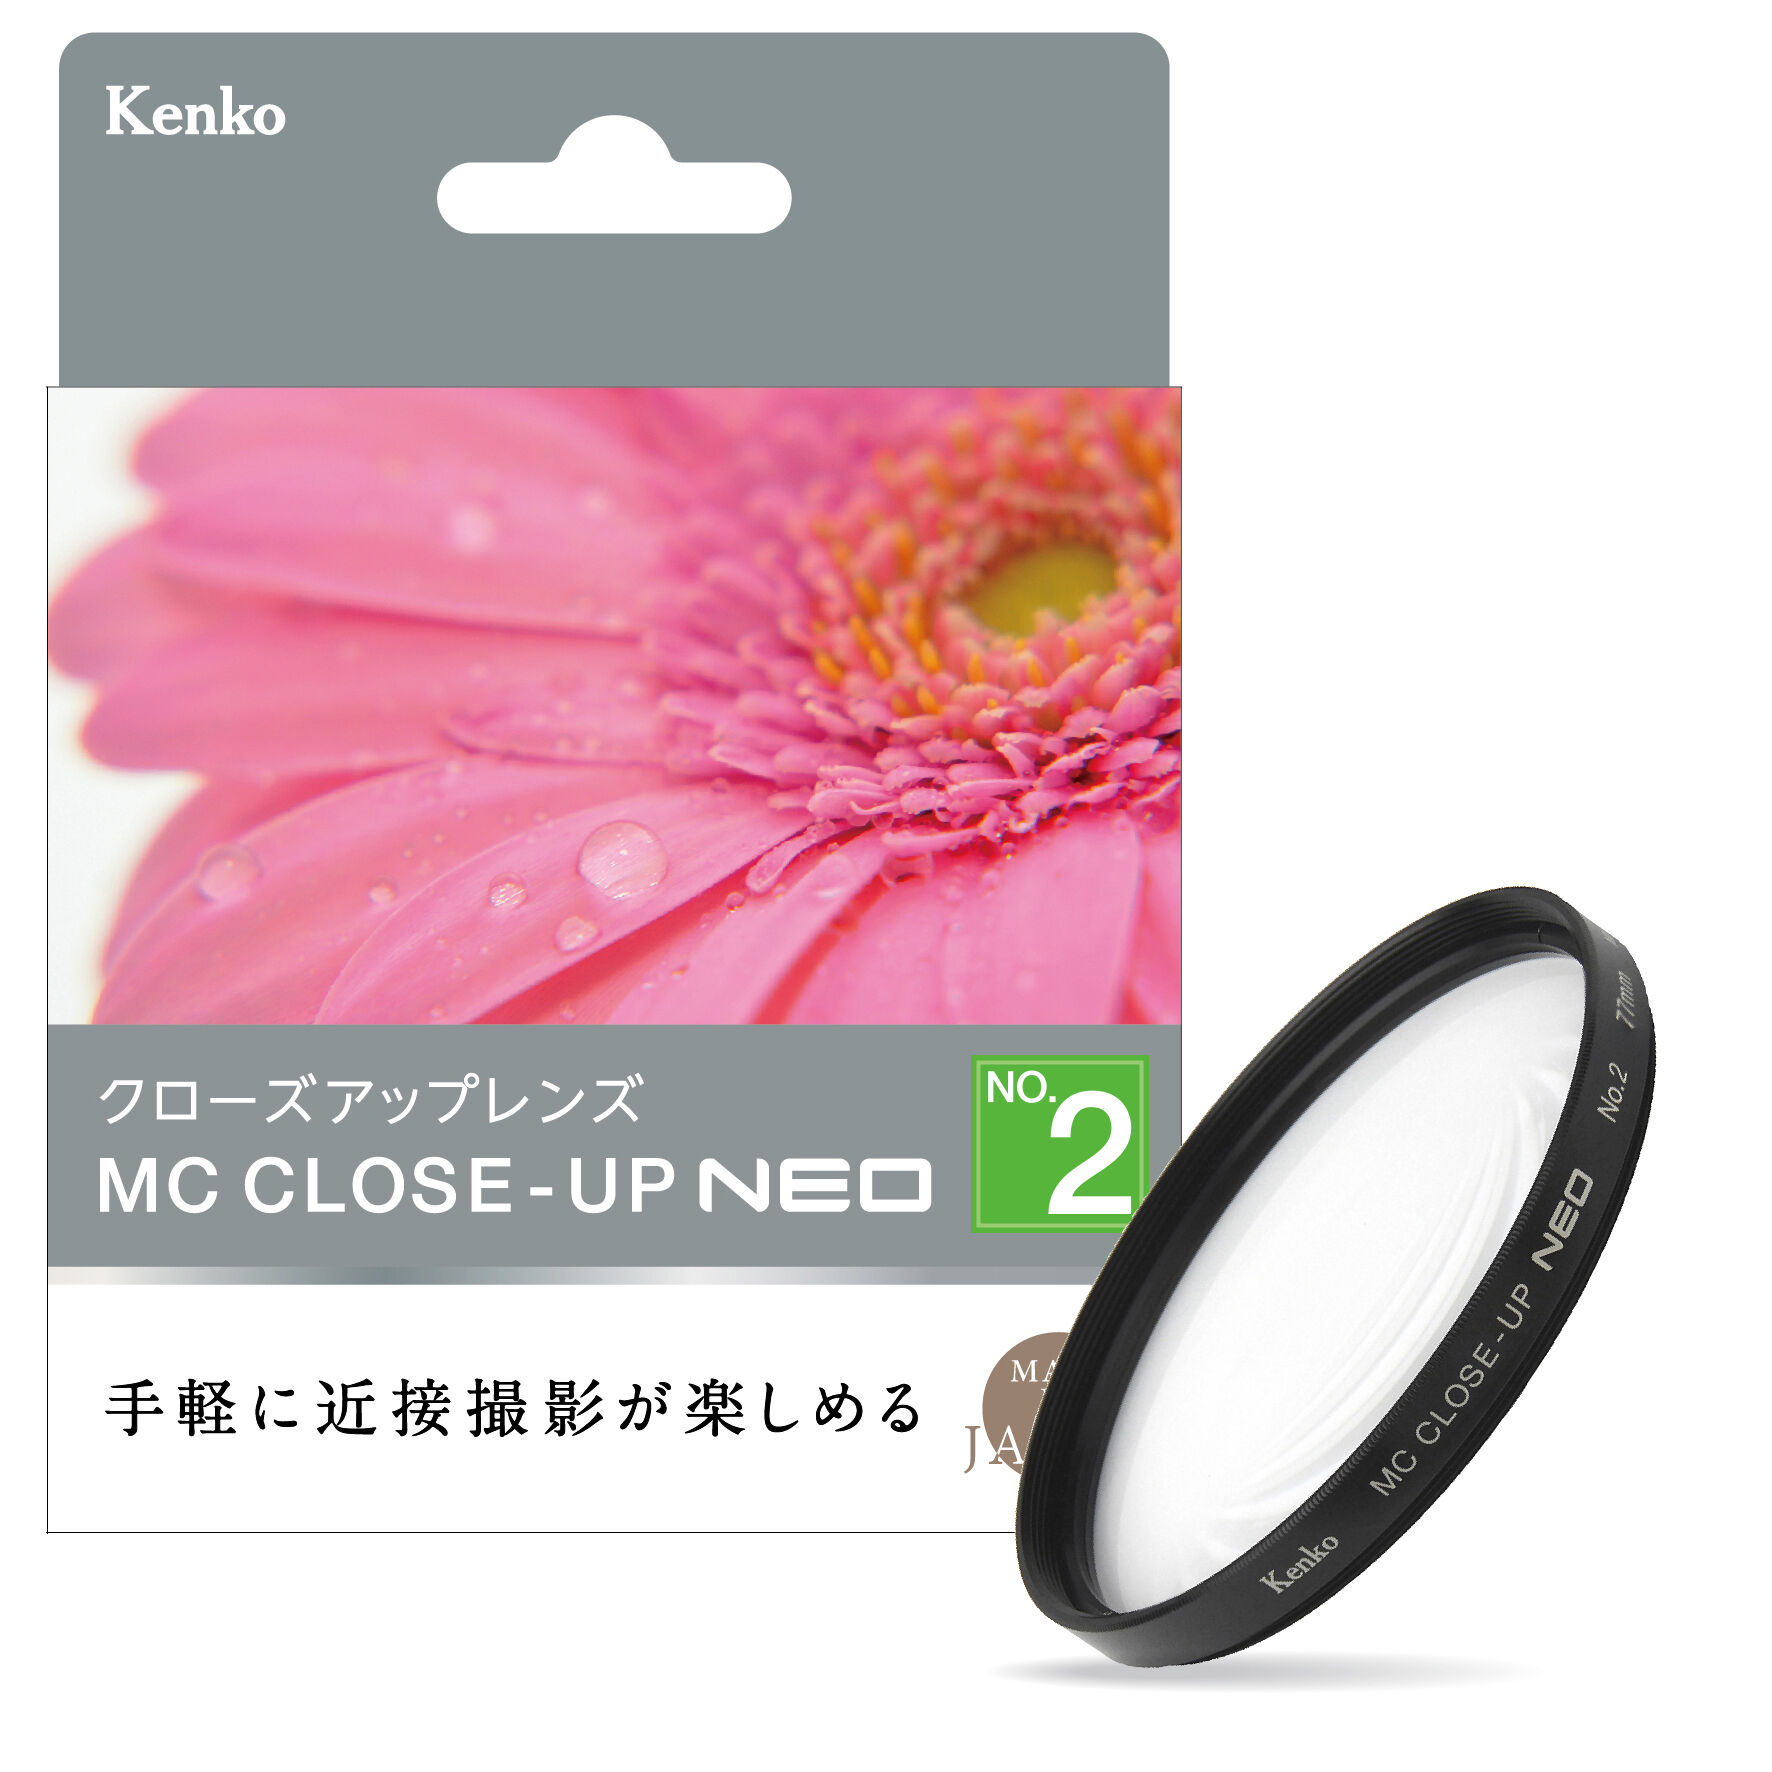 MCクローズアップ NEO No.2| ケンコー・トキナー